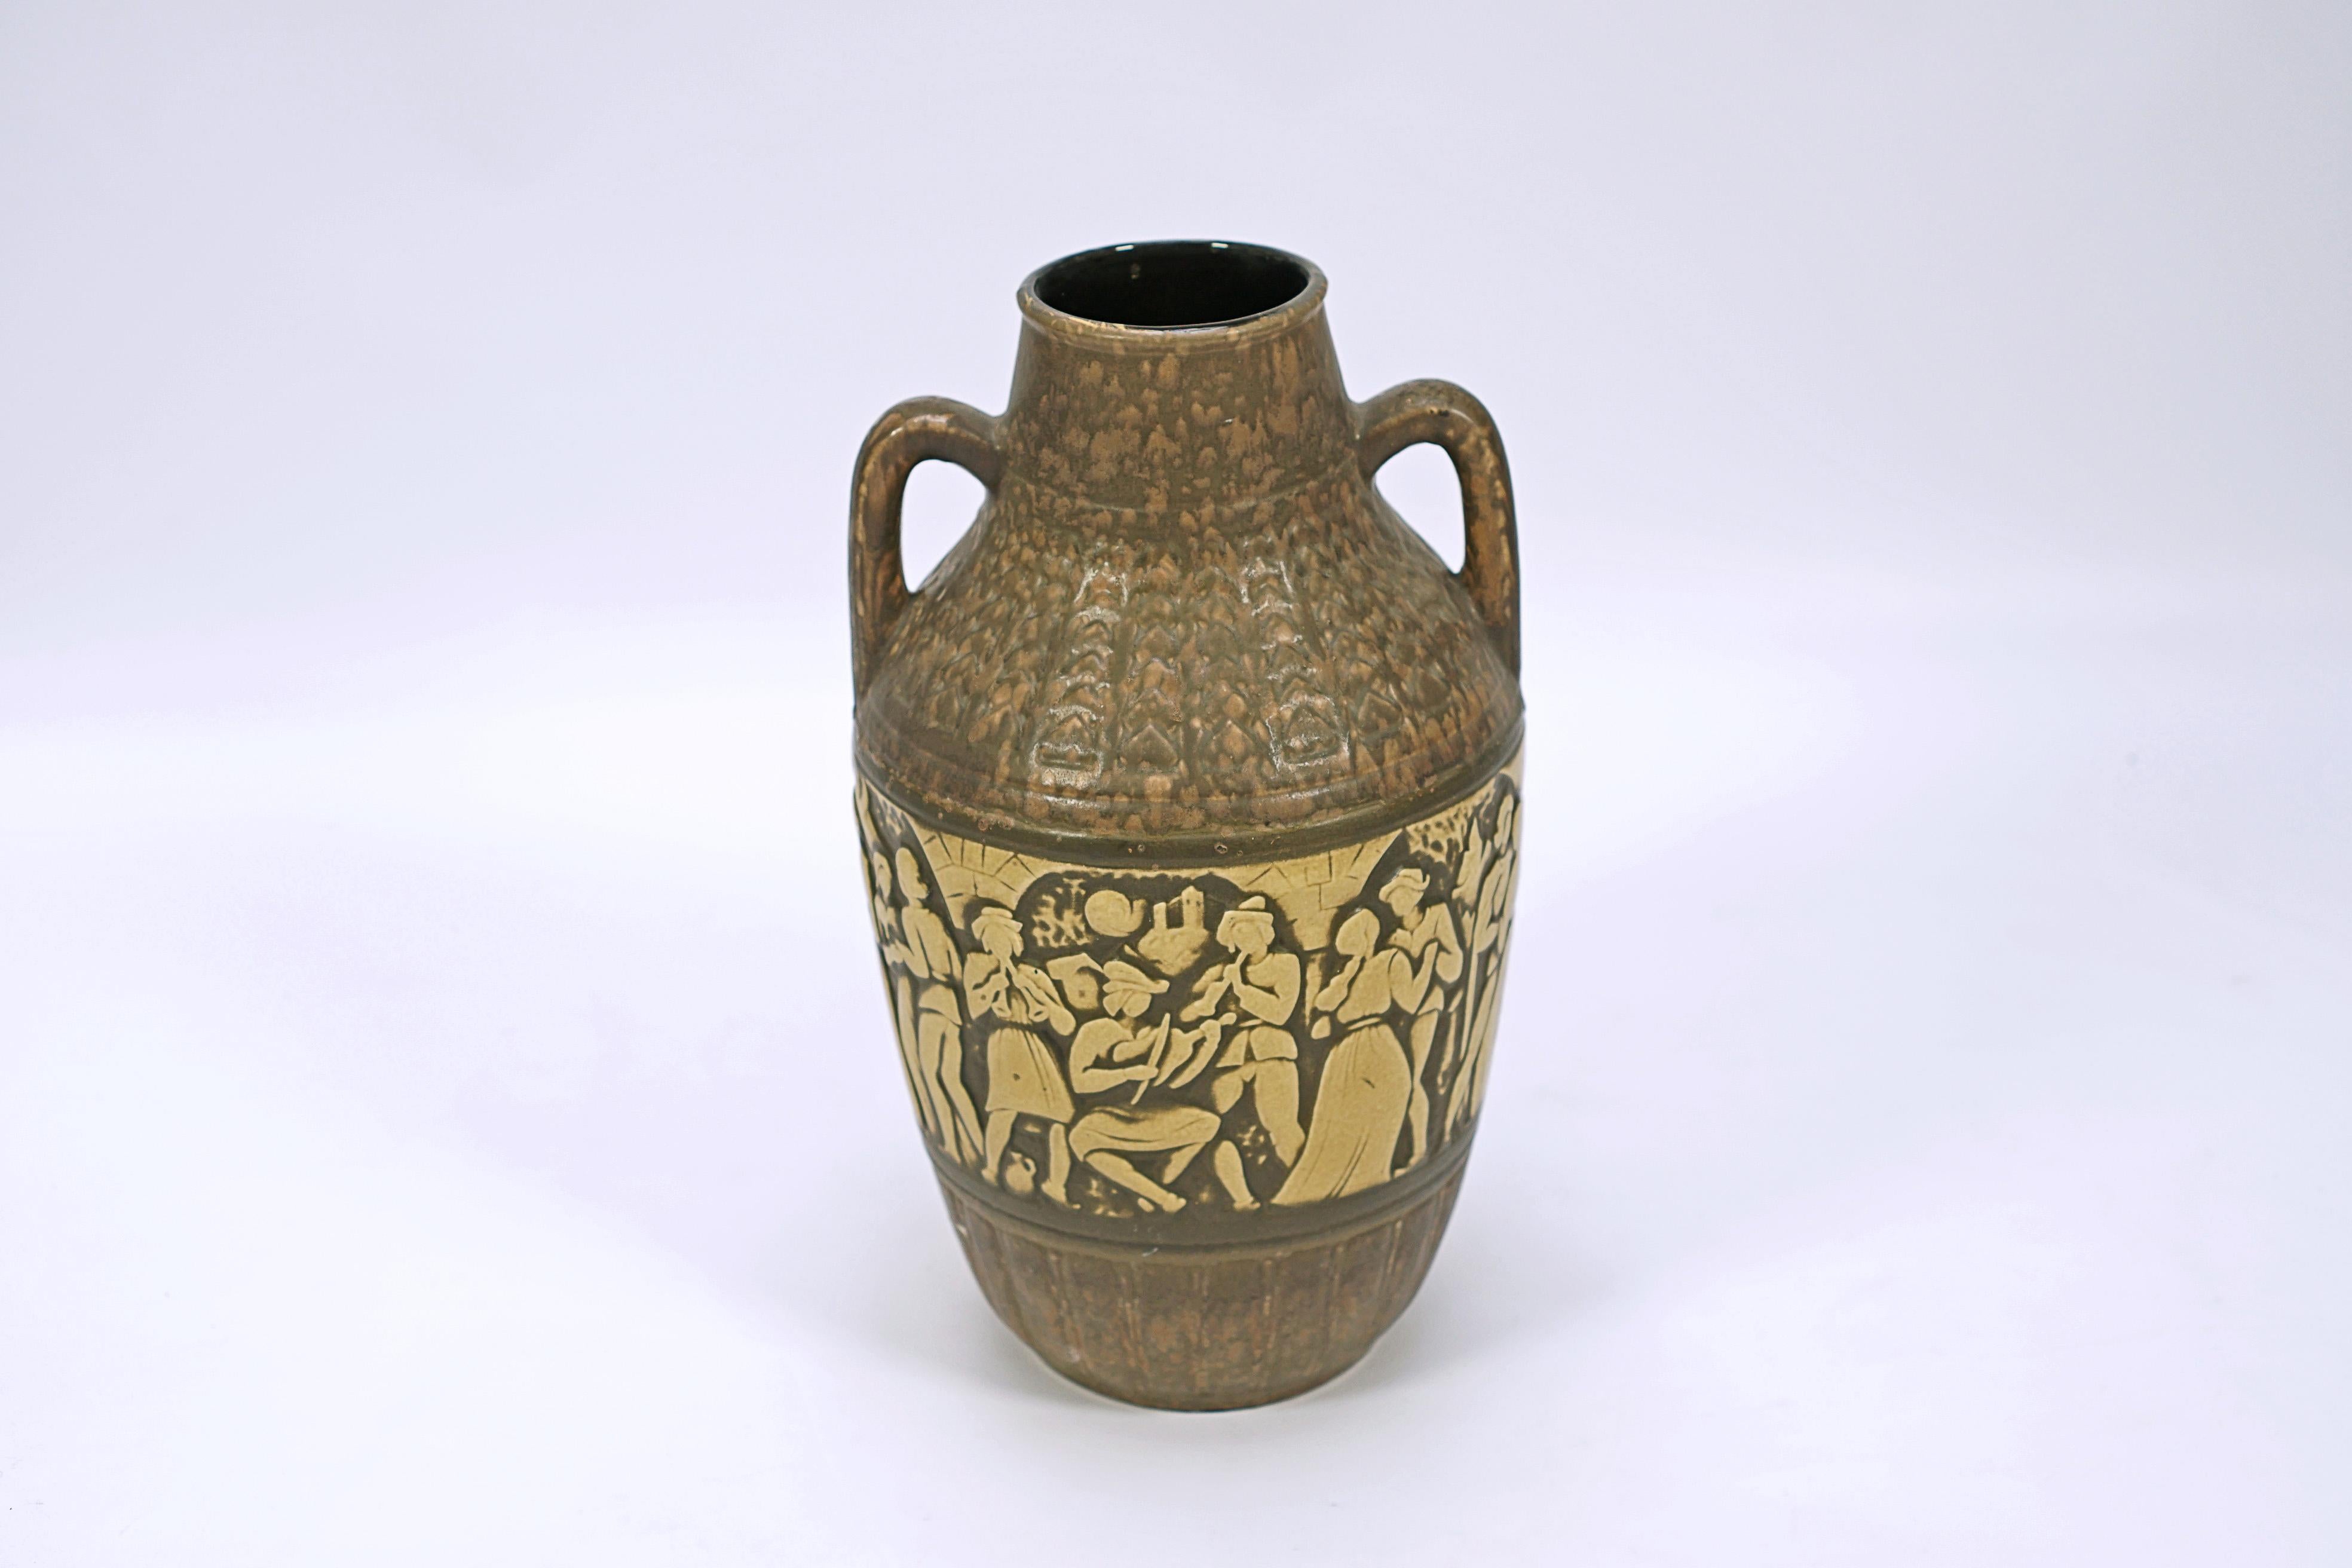 Vase en céramique dans les tons bruns avec poignées, avec un centre de personnages dans un parti allemand de l'époque.

Signé W. Germany, No. 224157. (Allemagne de l'Ouest d'après-guerre)